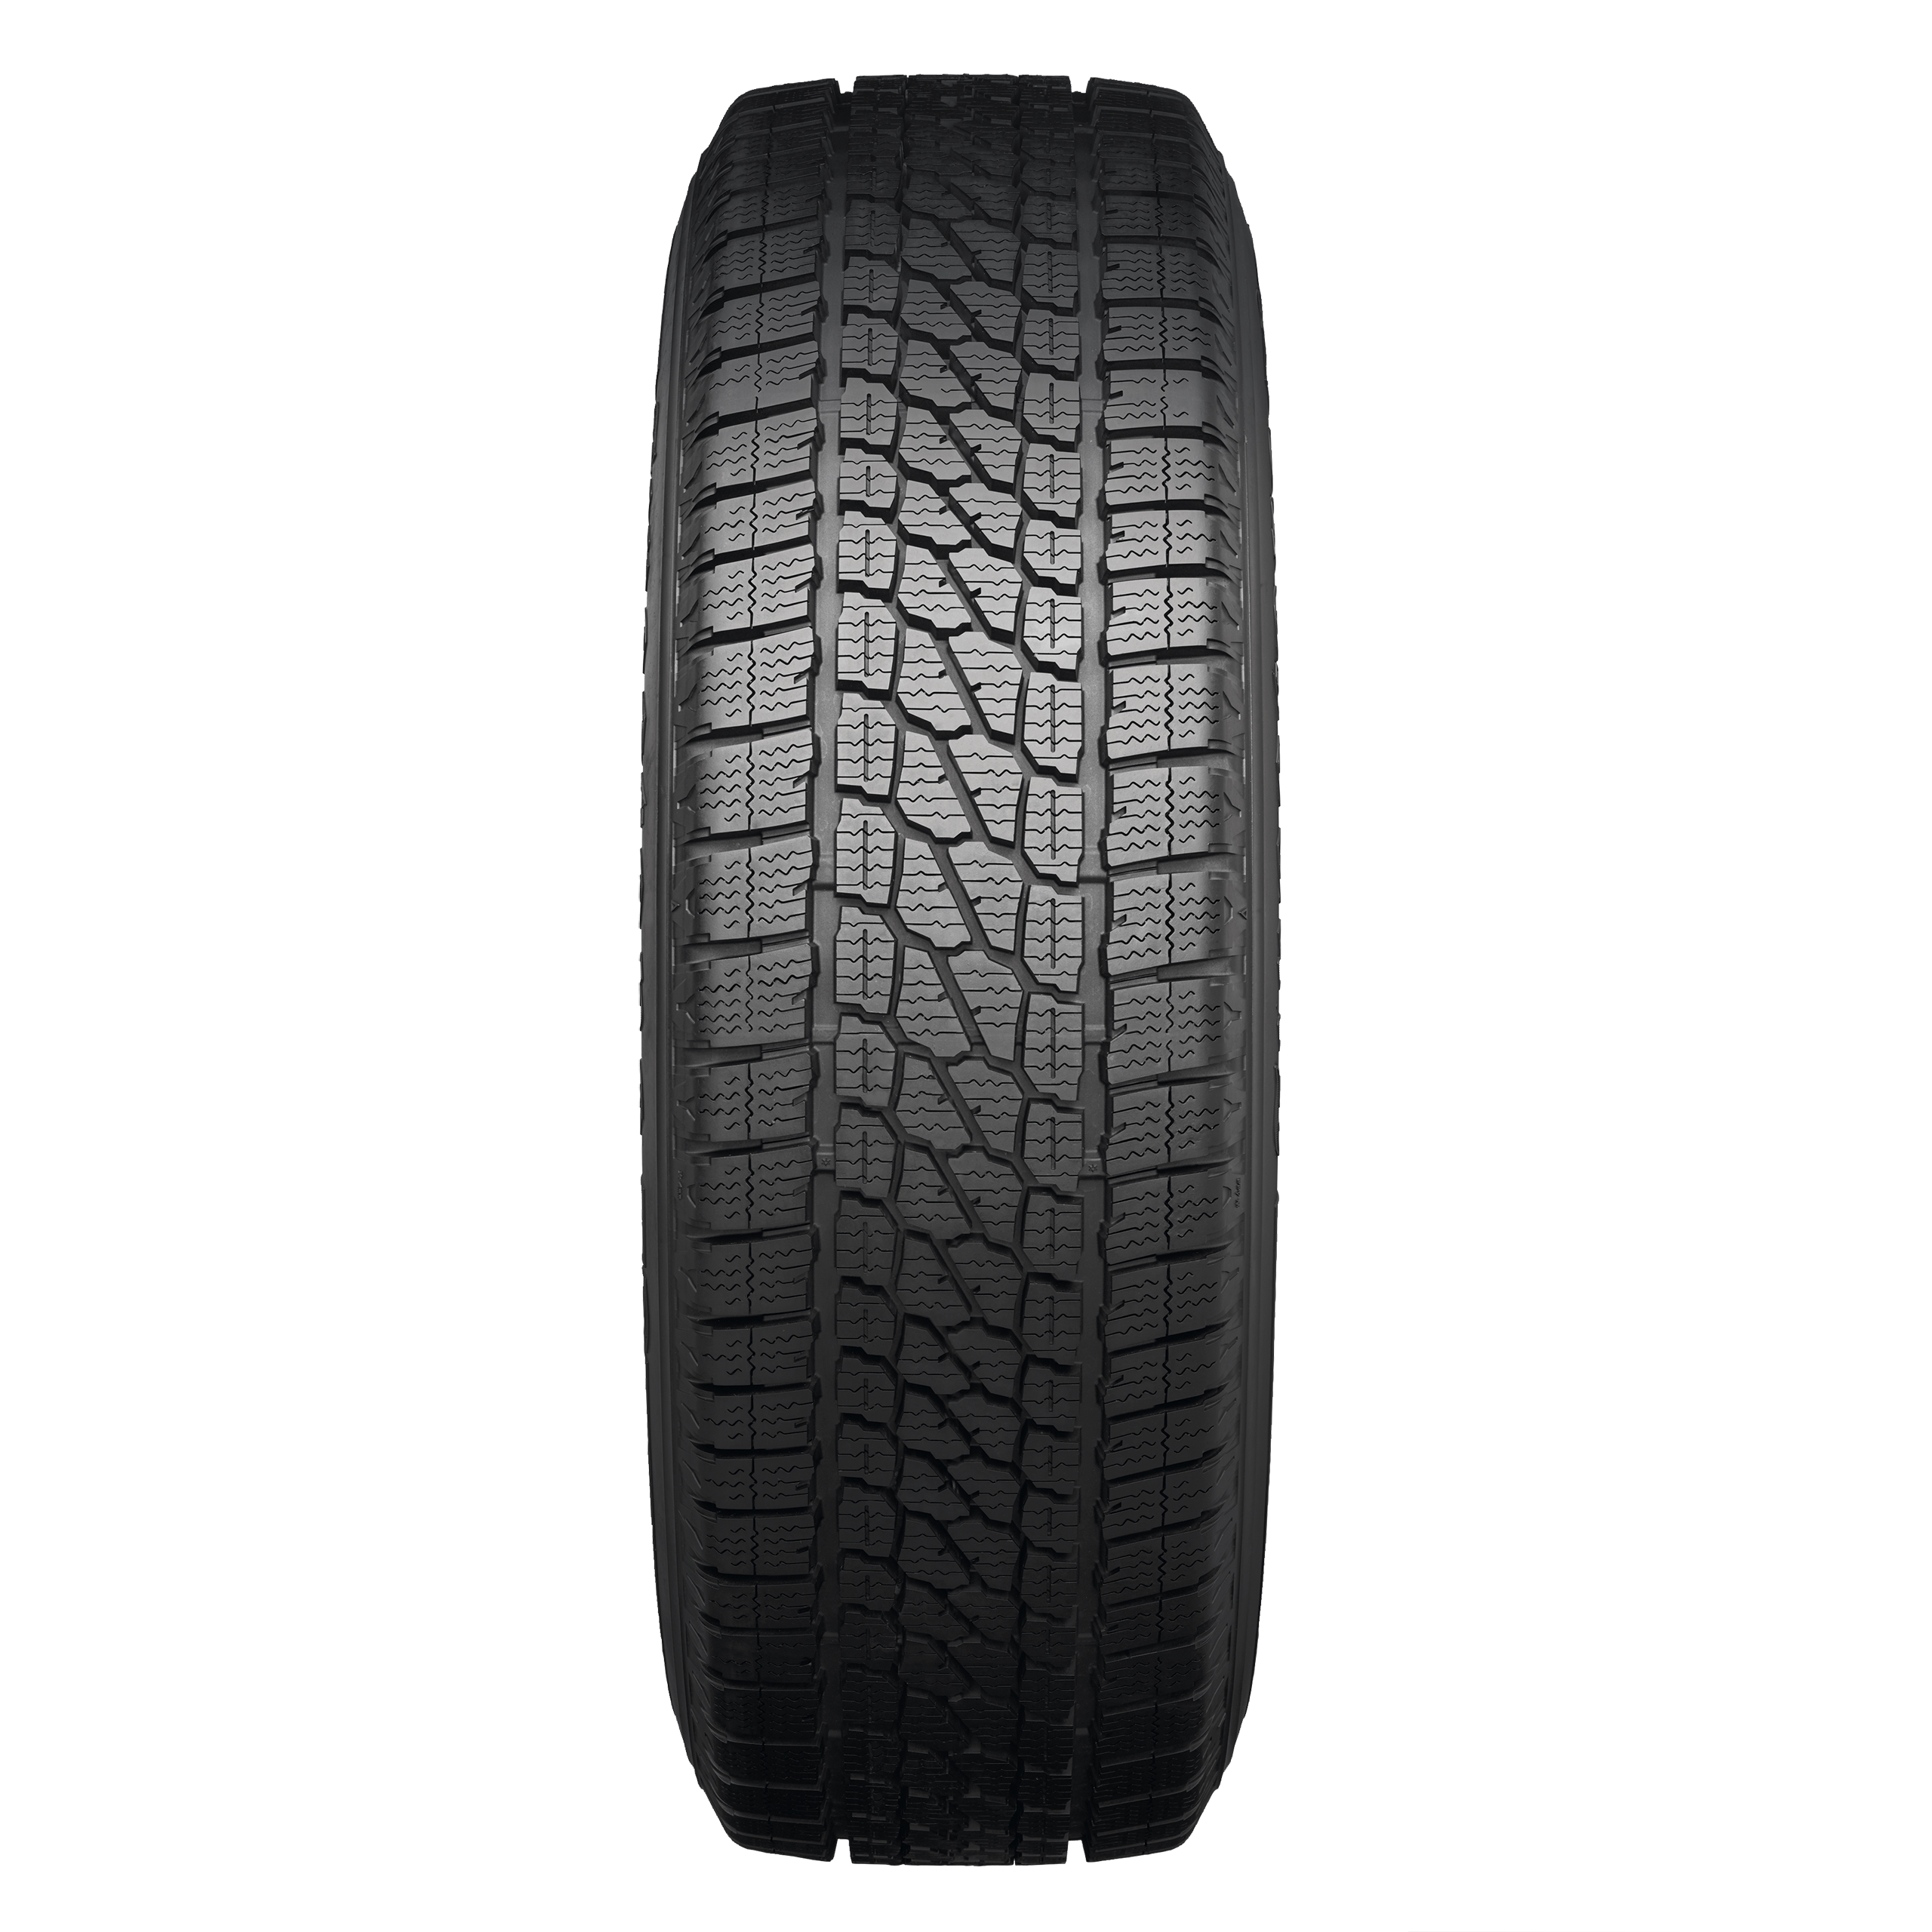 Firestone Vanhawk 2 Winter | What Tyre | Independent tyre comparison | Autoreifen